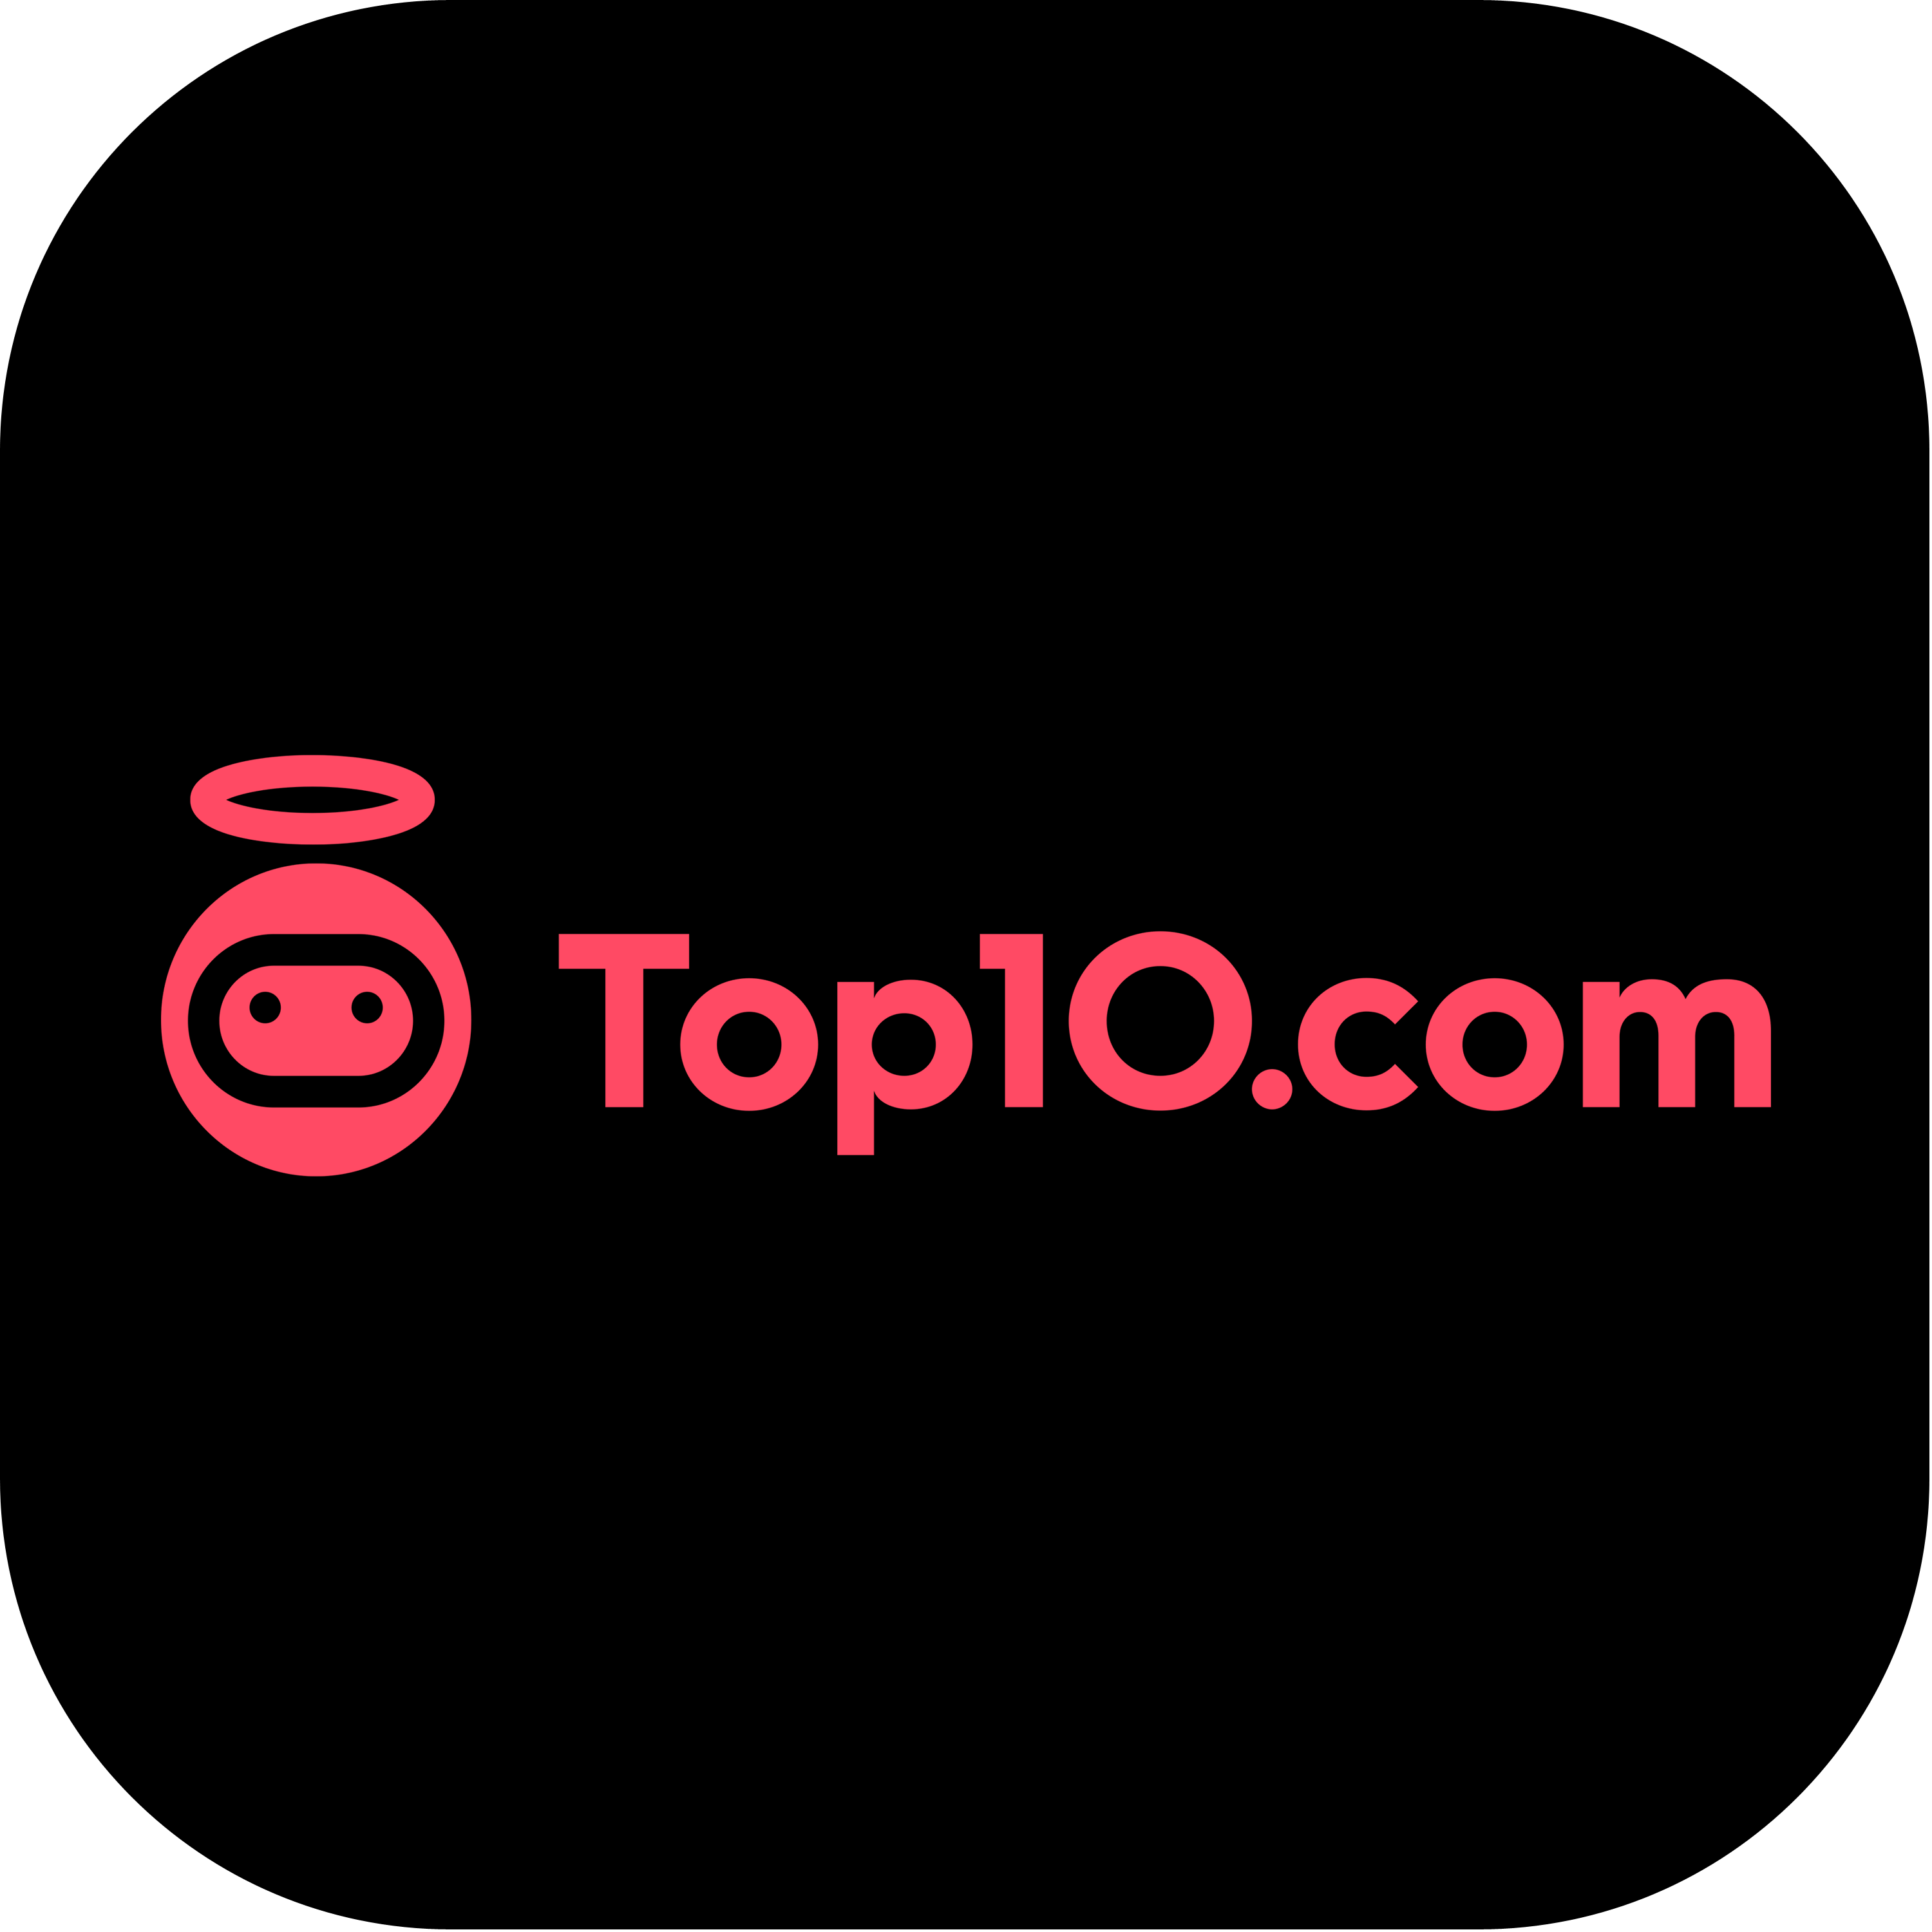 Top10.com Logo Transparent Photo